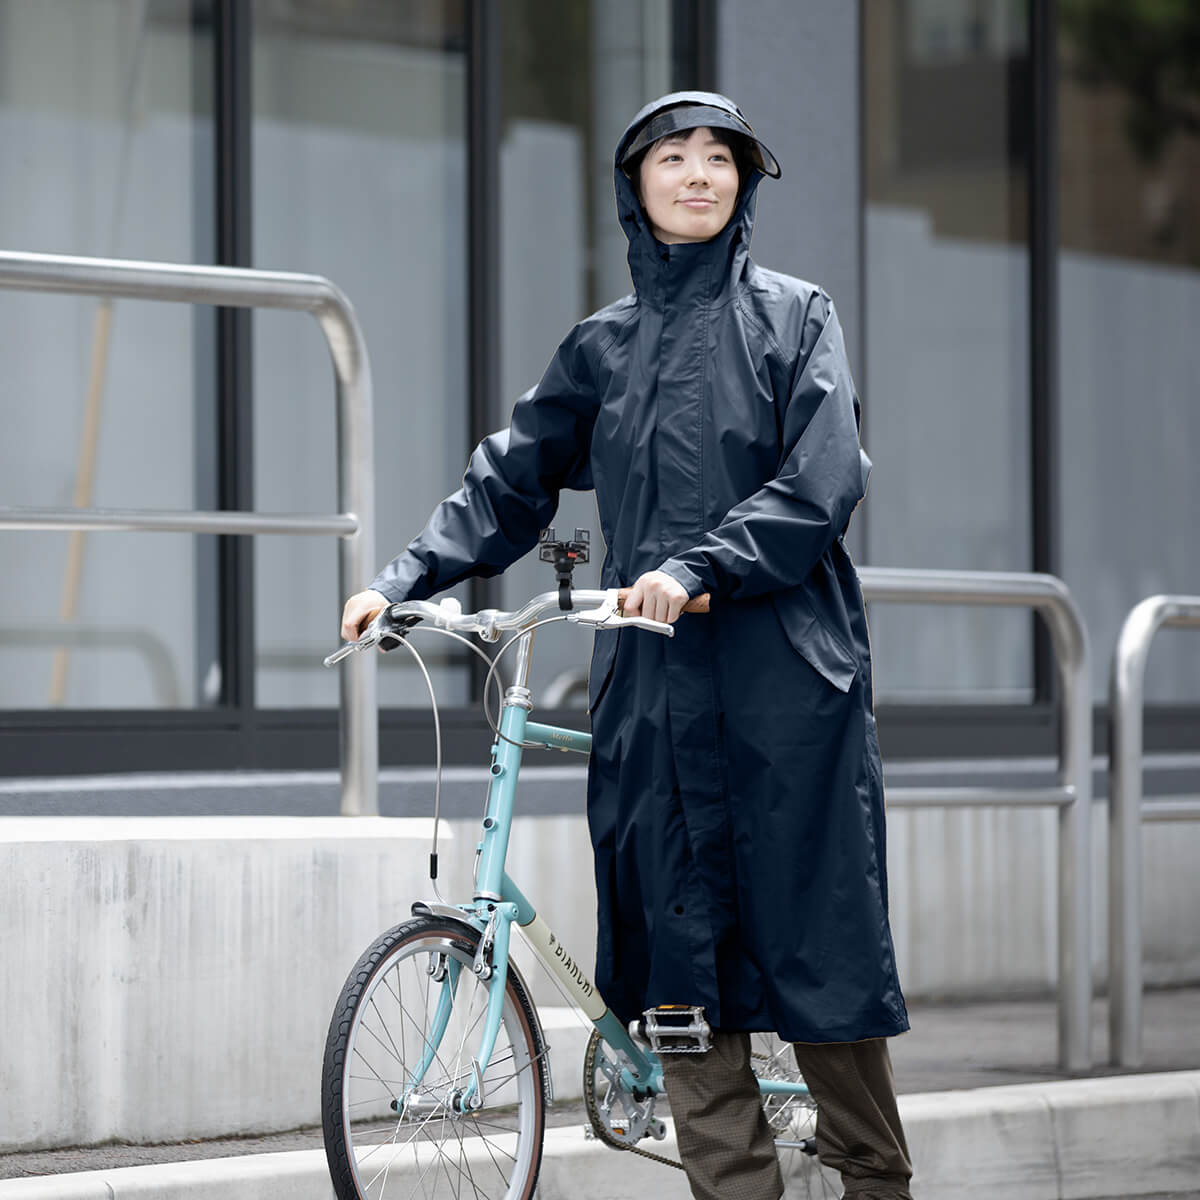 でおすすめアイテム。 レインコート Lサイズ カッパ 雨具 黒 メンズ バイク 自転車 上下 防水